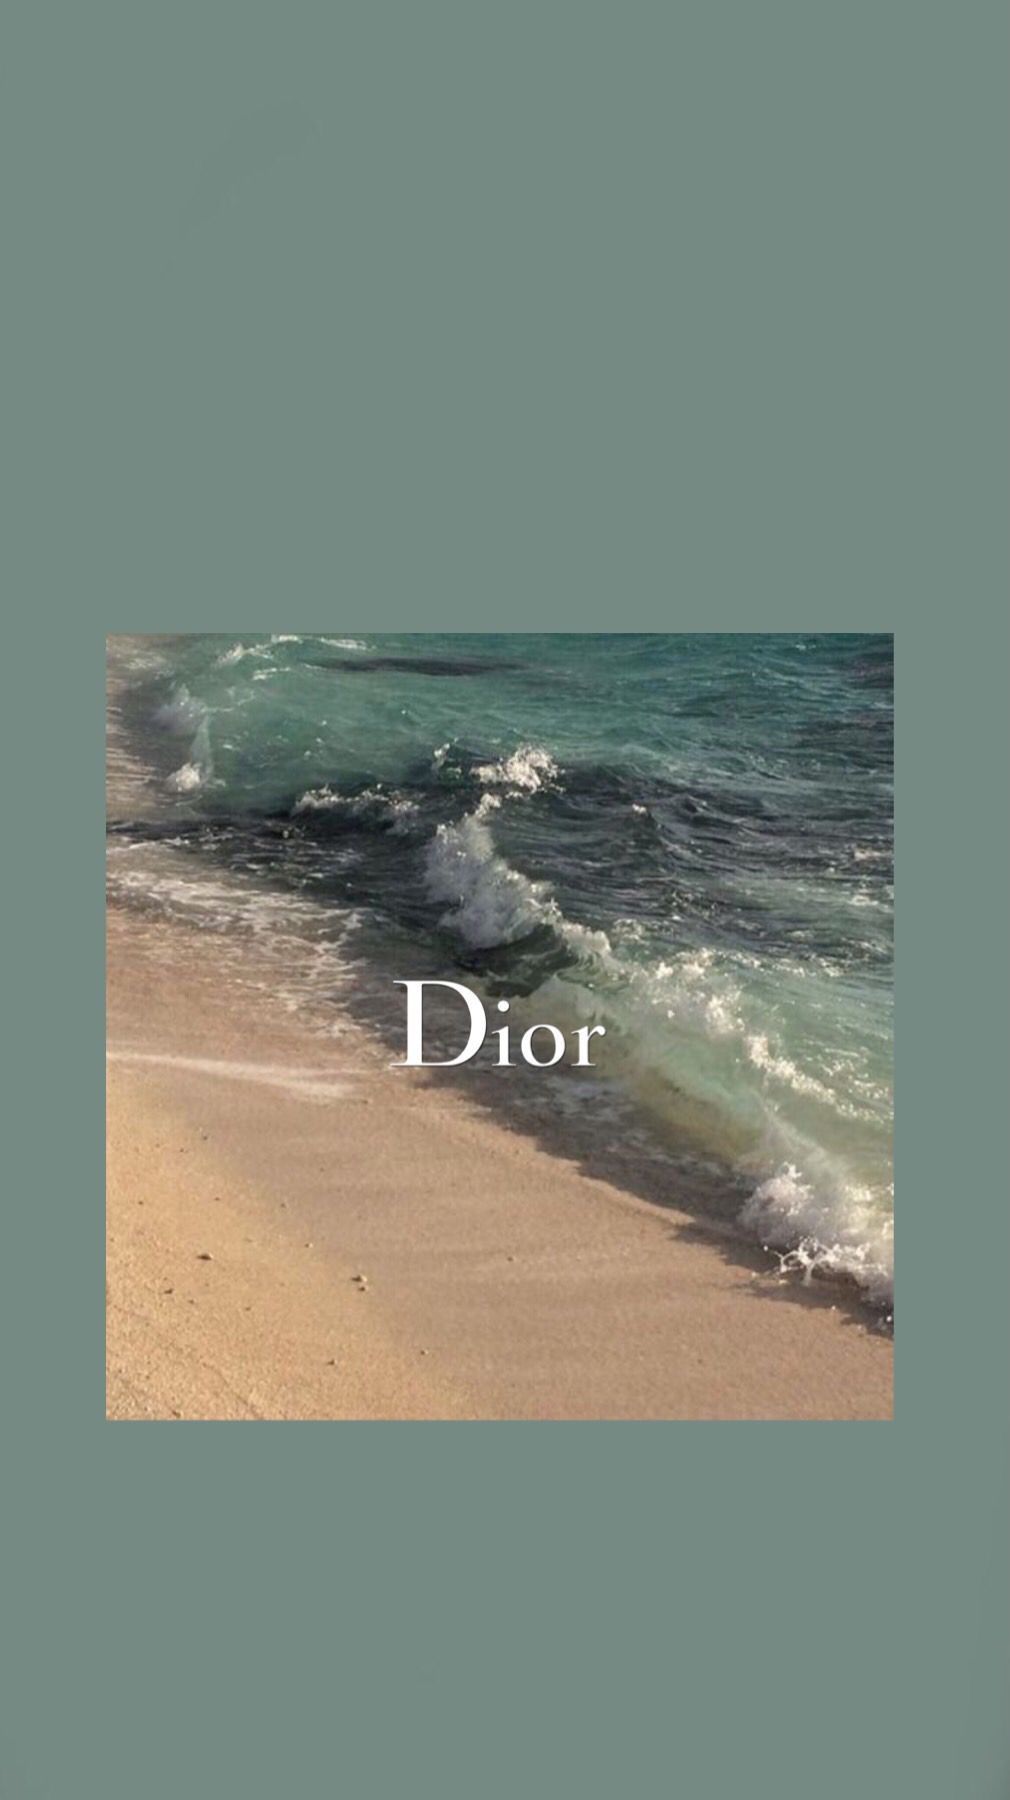 Beach Dior Wallpaper #beach #dior .com